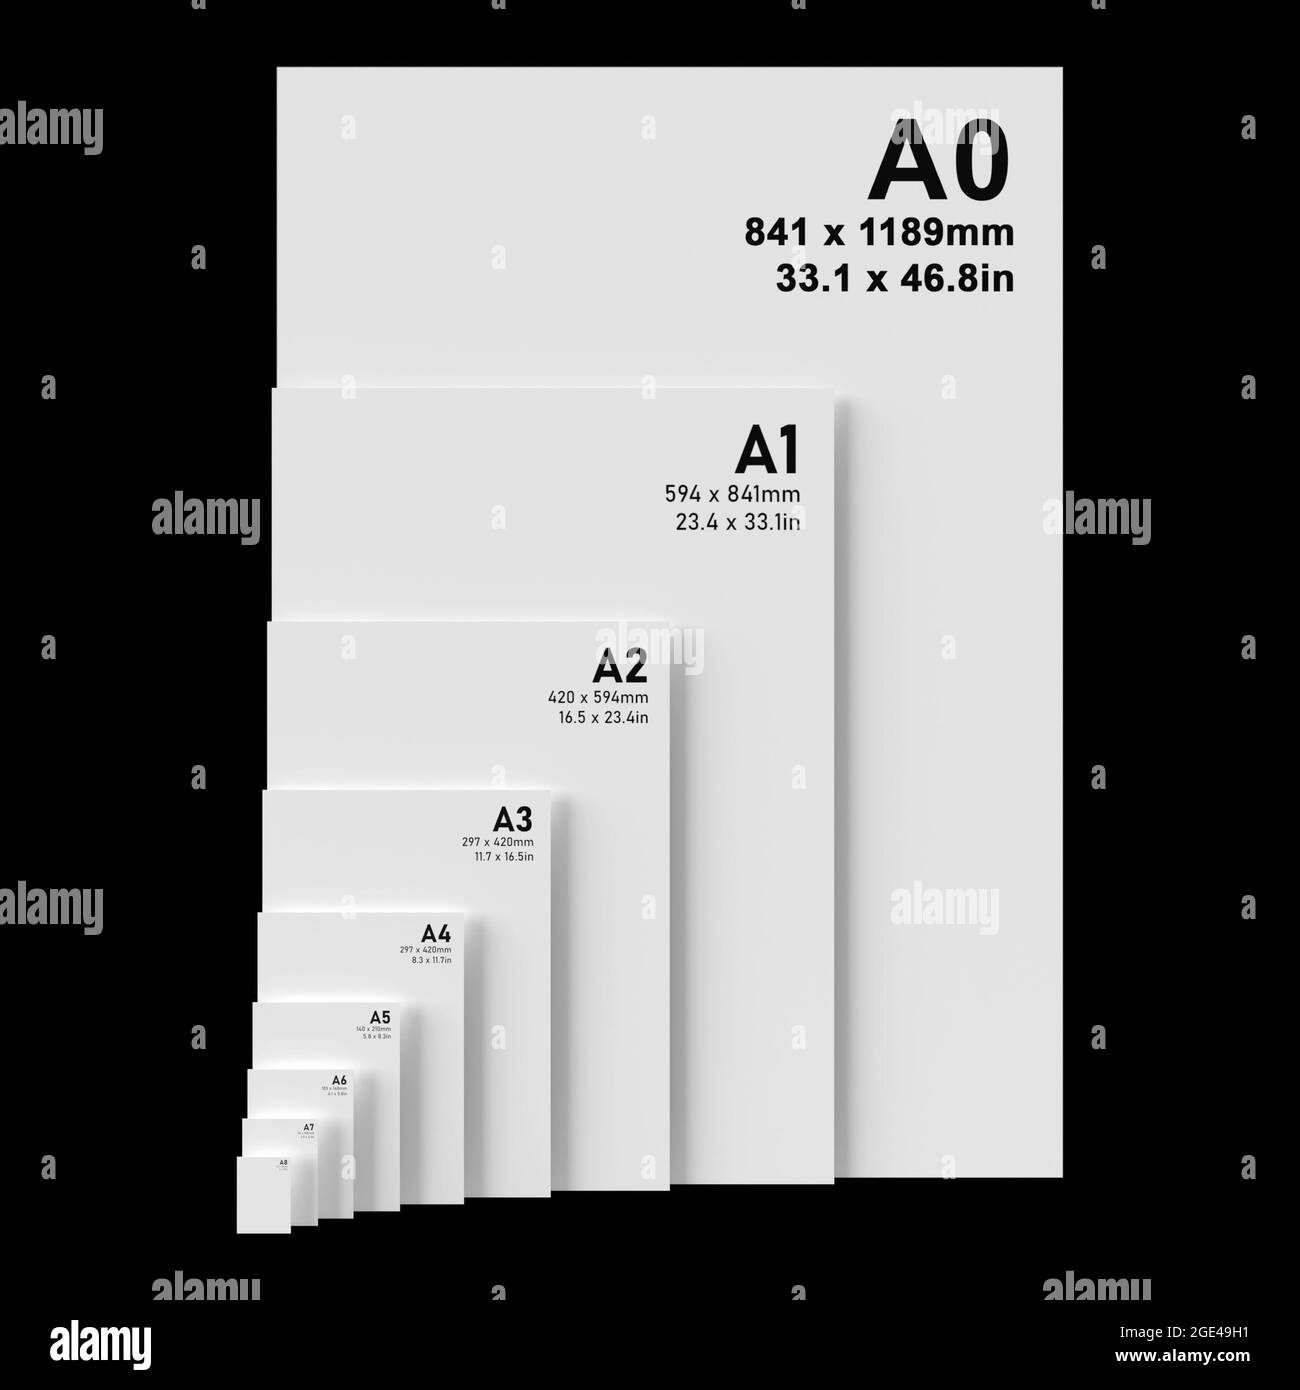 A1 size -Fotos und -Bildmaterial in hoher Auflösung – Alamy